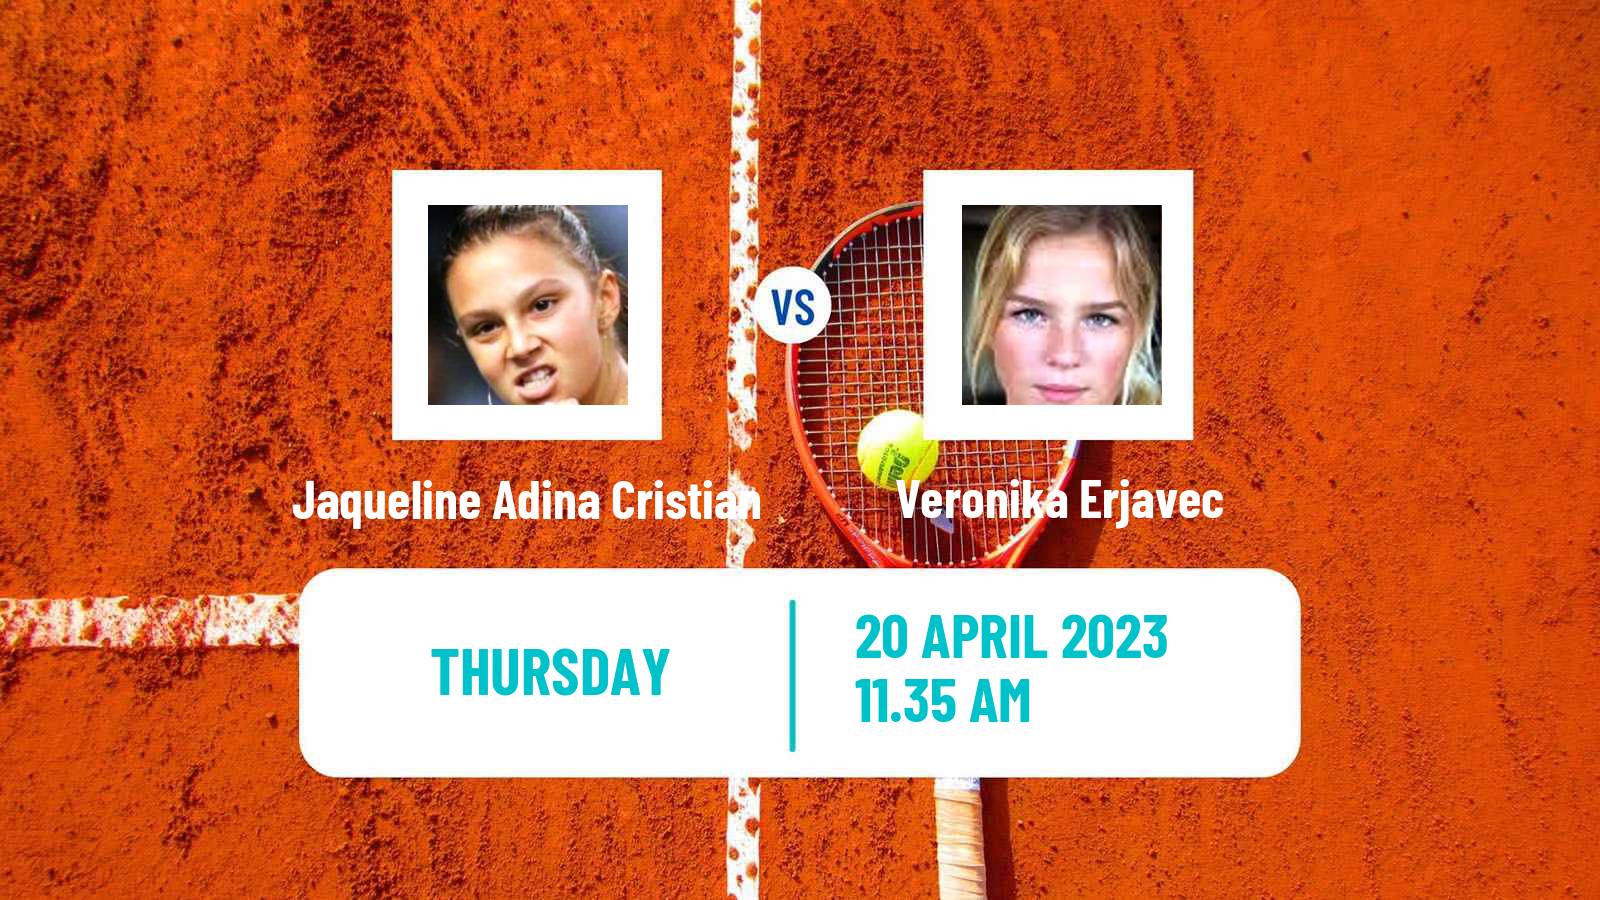 Tennis ITF Tournaments Jaqueline Adina Cristian - Veronika Erjavec